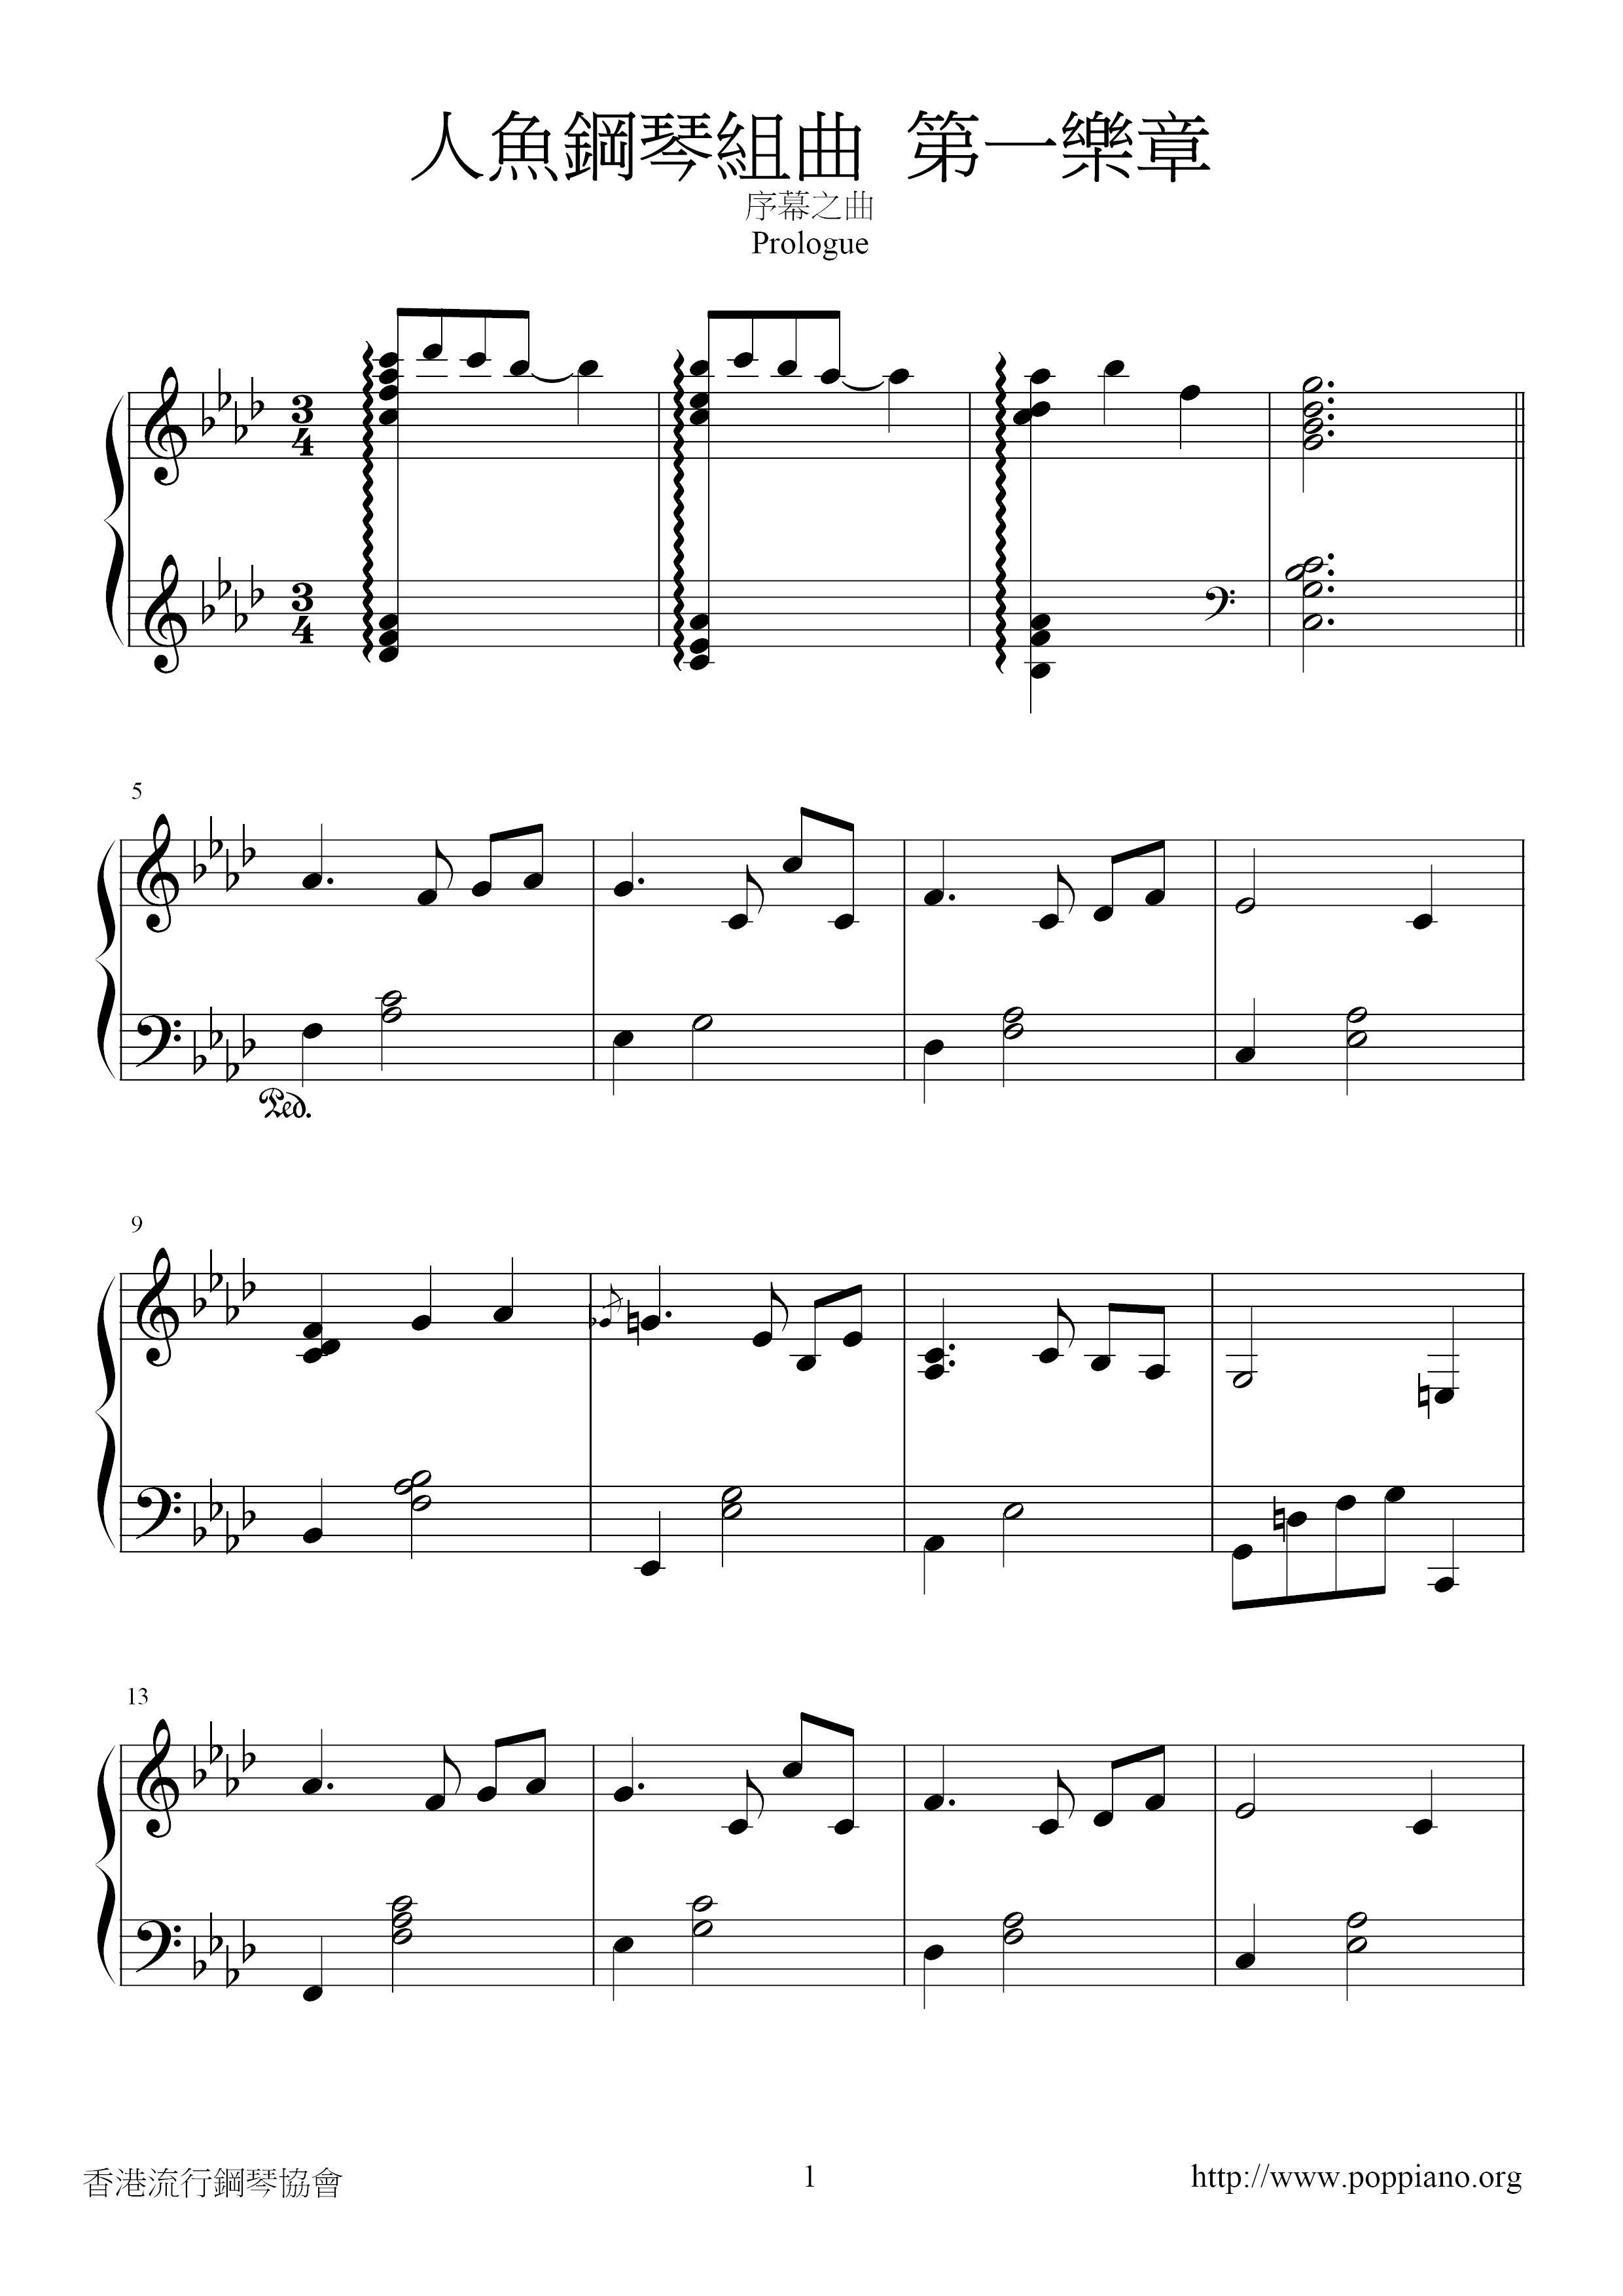 人魚鋼琴組曲 第一樂章 Score